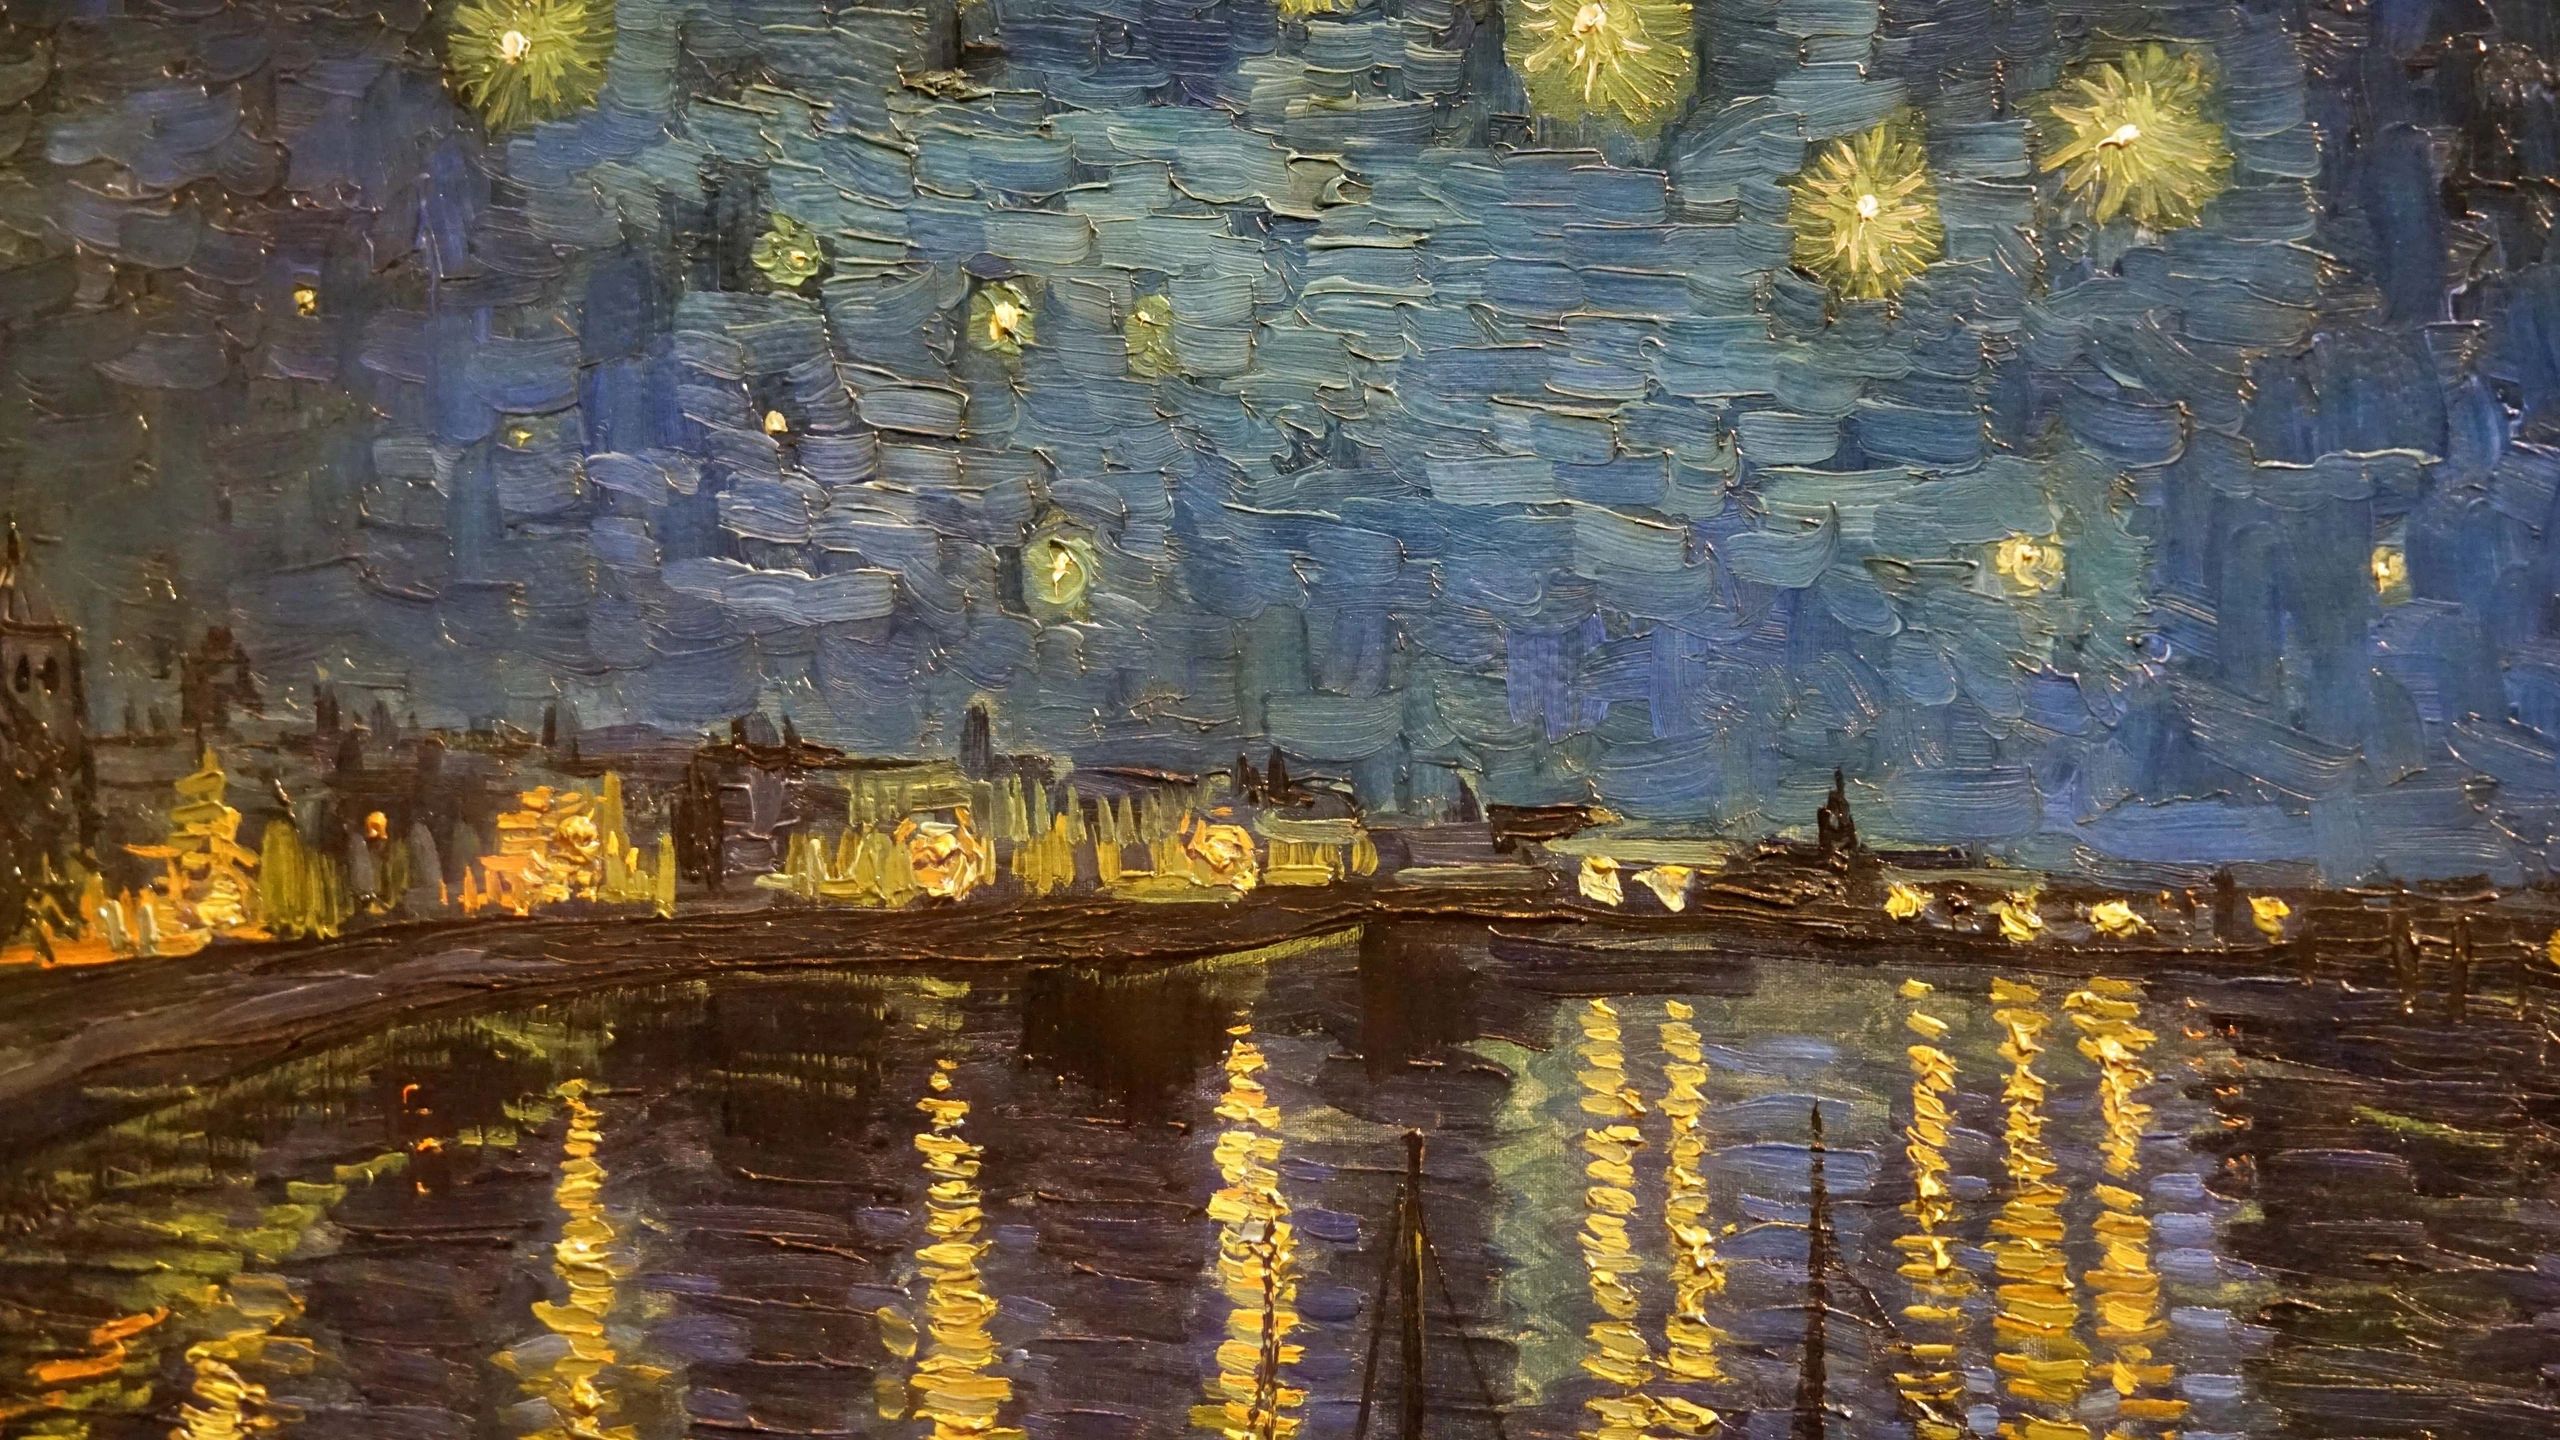 Van Gogh Art and paintings in Paris Museums